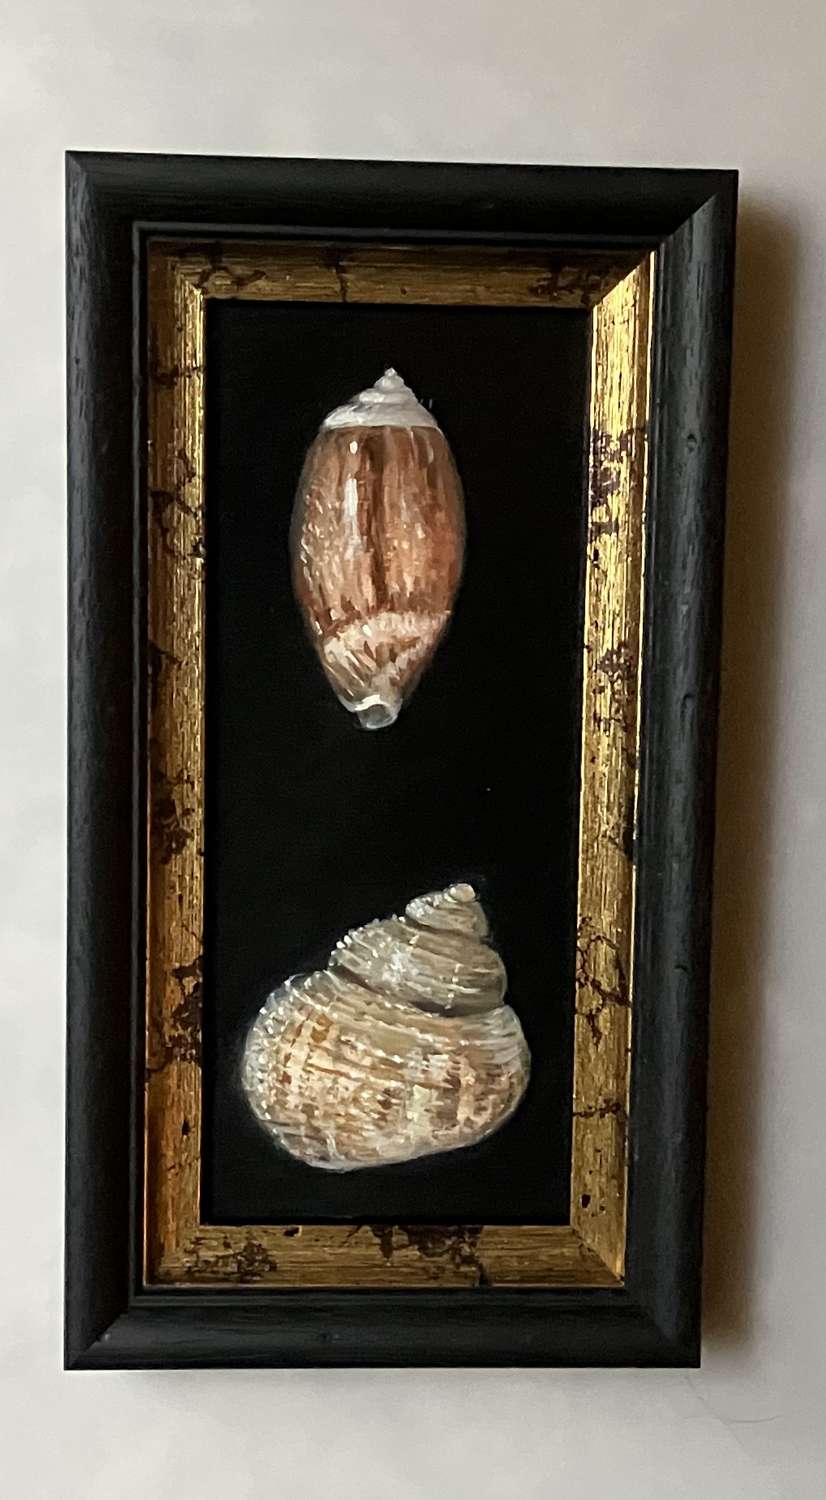 2 shells